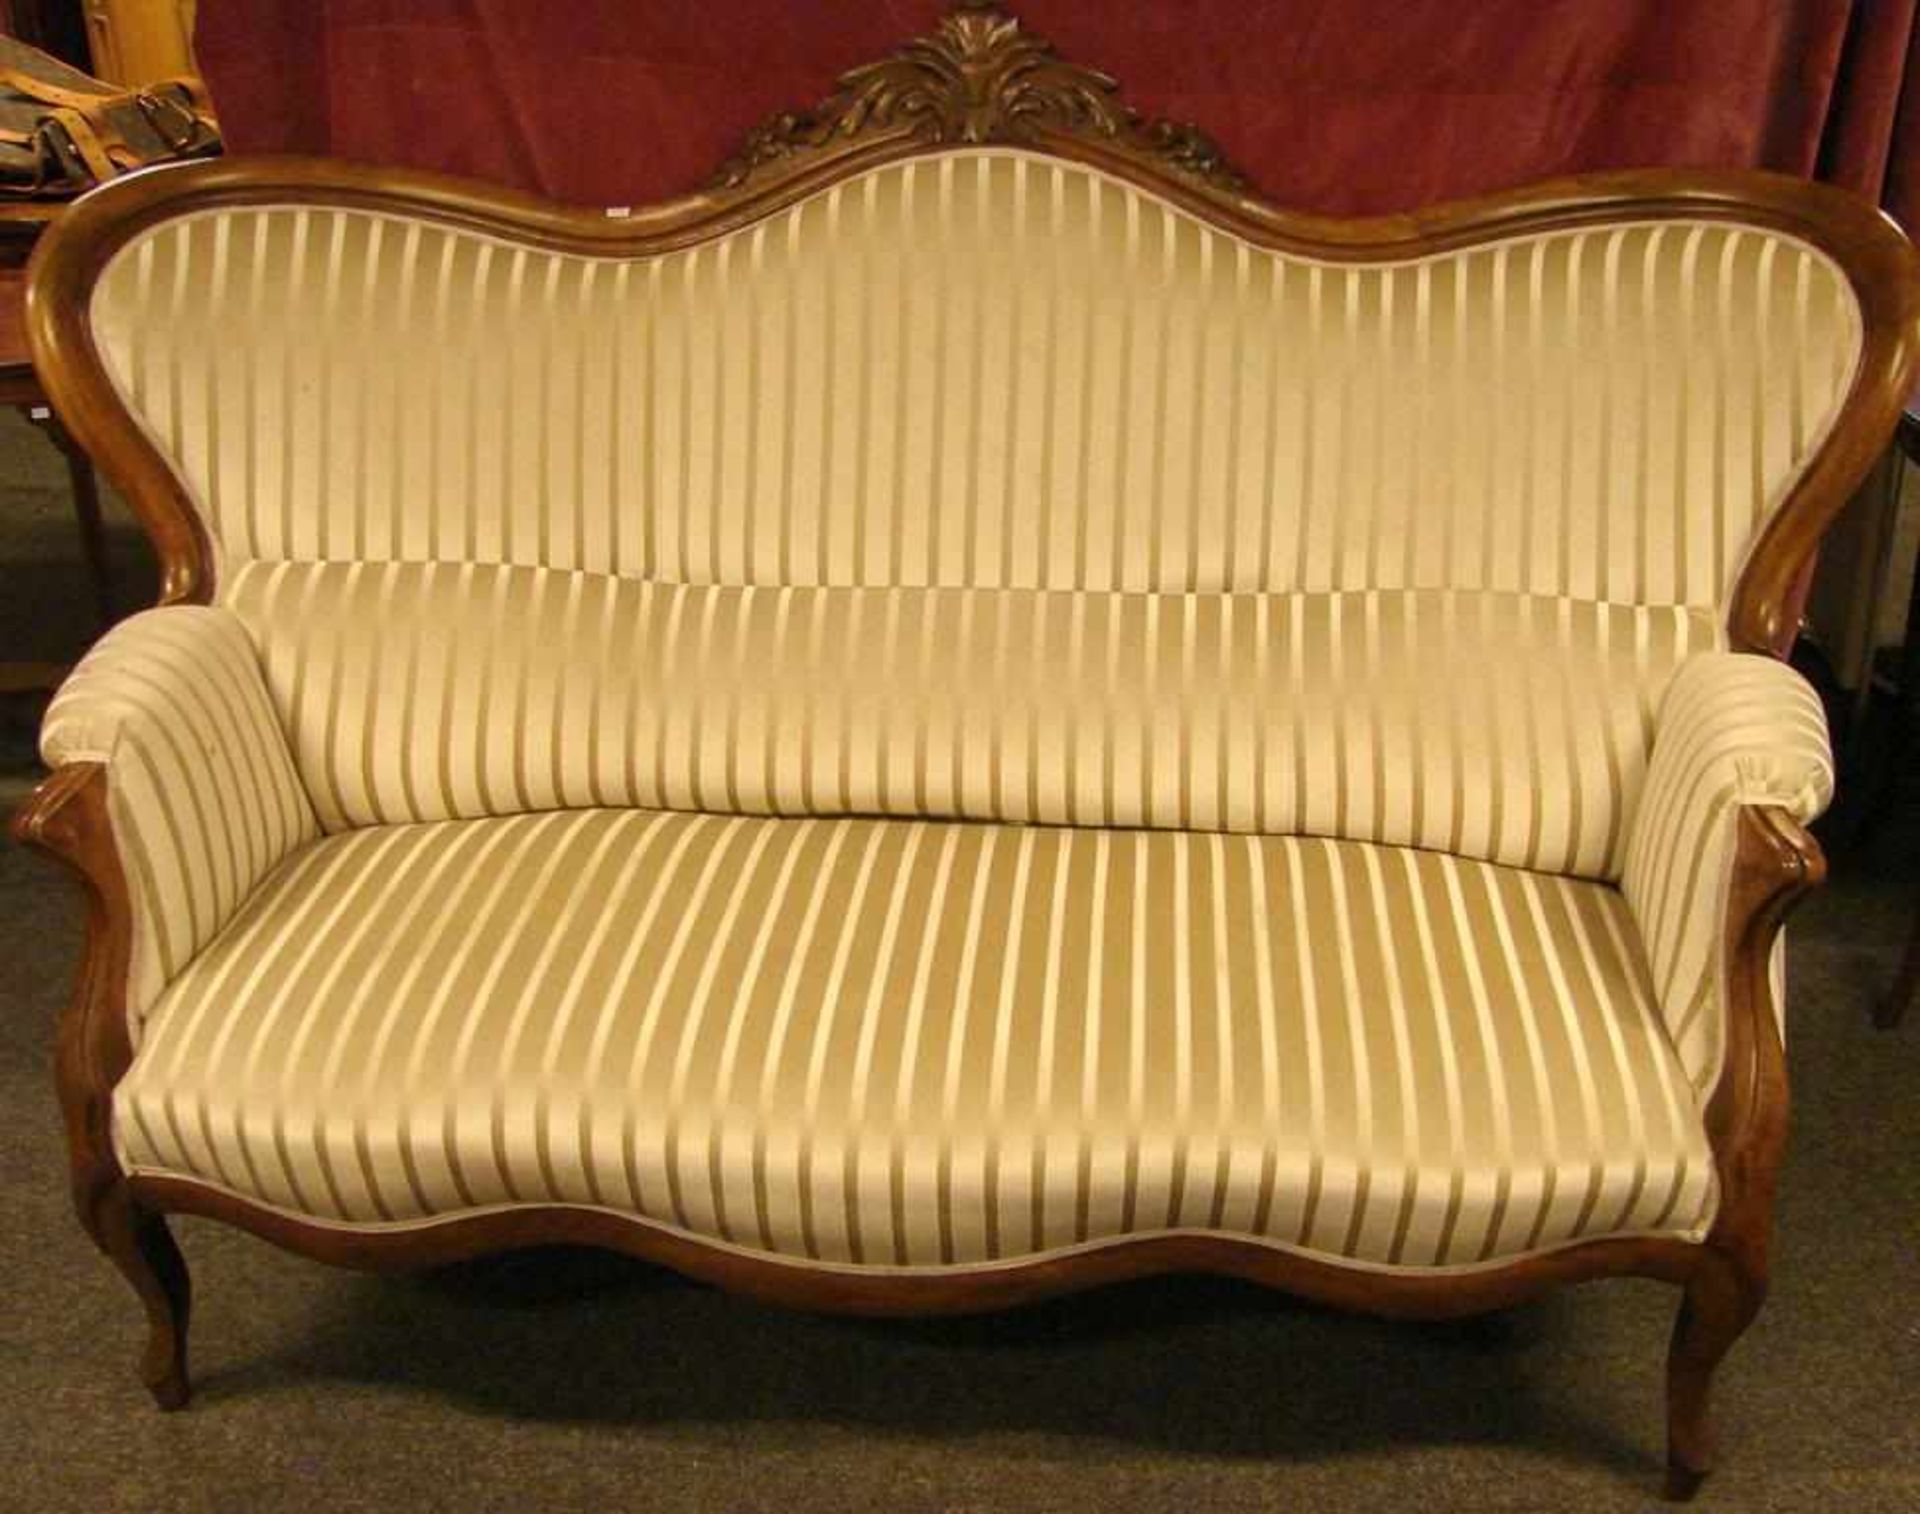 Sofa, Nussbaum, um 1890, Breite ca. 170 cm, guter Zustand, auch der Bezug - Image 2 of 3